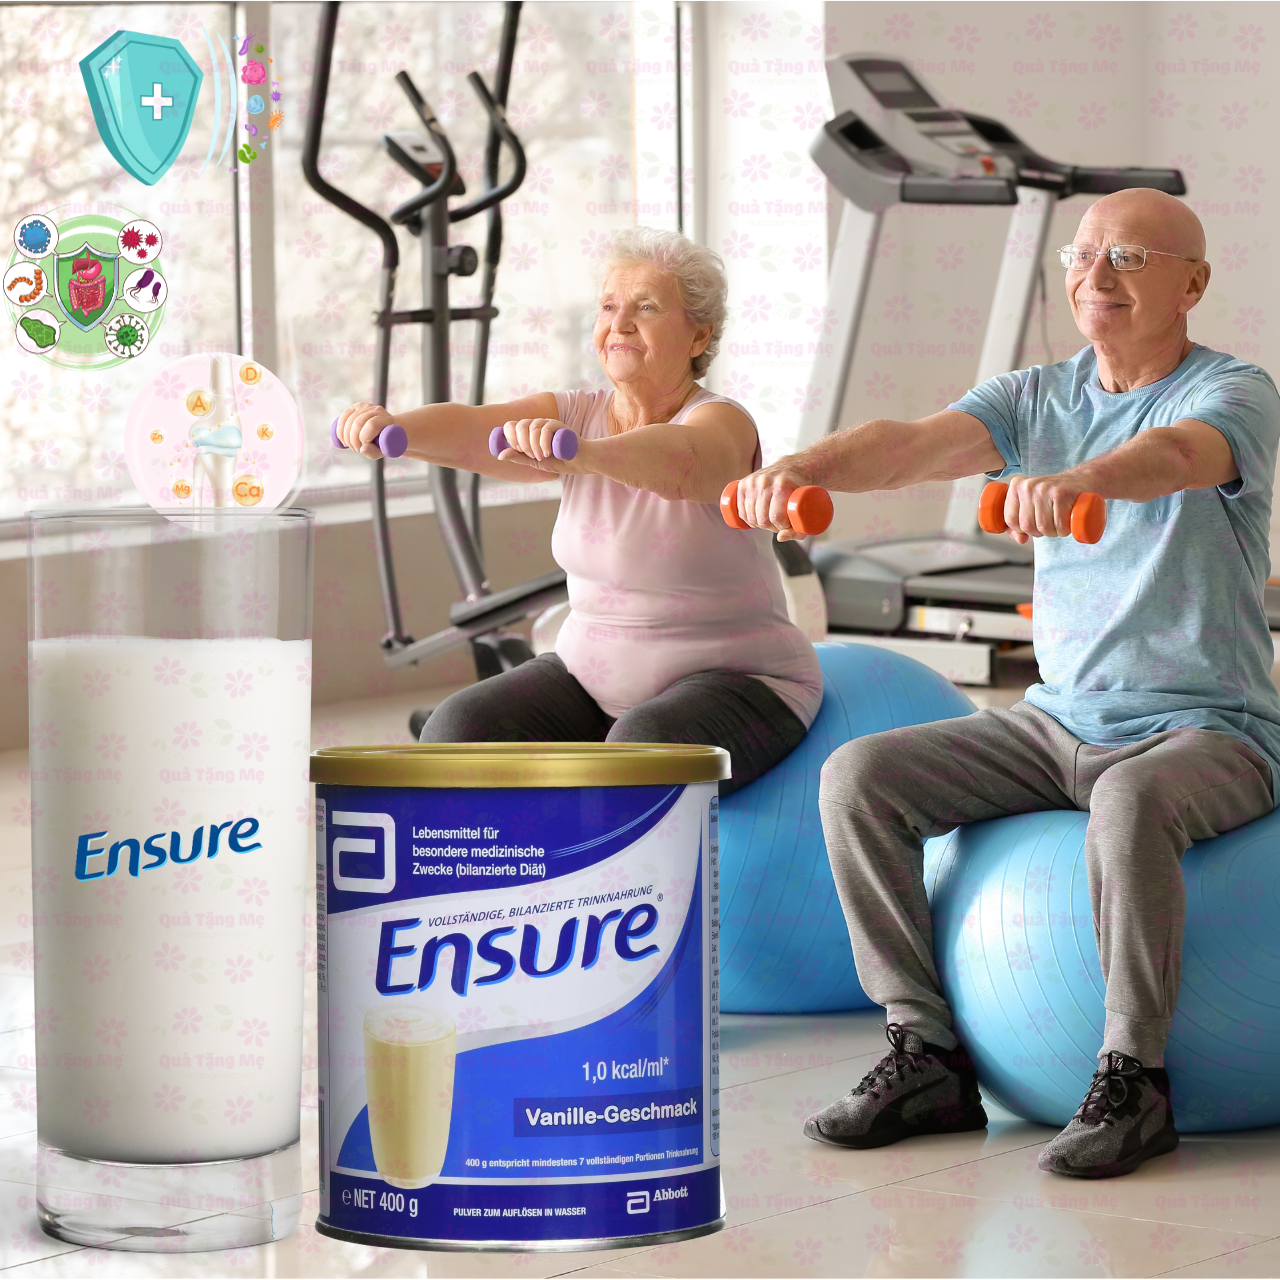 Hình ảnh Ensure Đức cho người lớn tuổi Ensure Vanille-Geschmask giúp hồi phục sức khỏe cho người gầy, suy dinh dưỡng - QuaTangMe Extaste